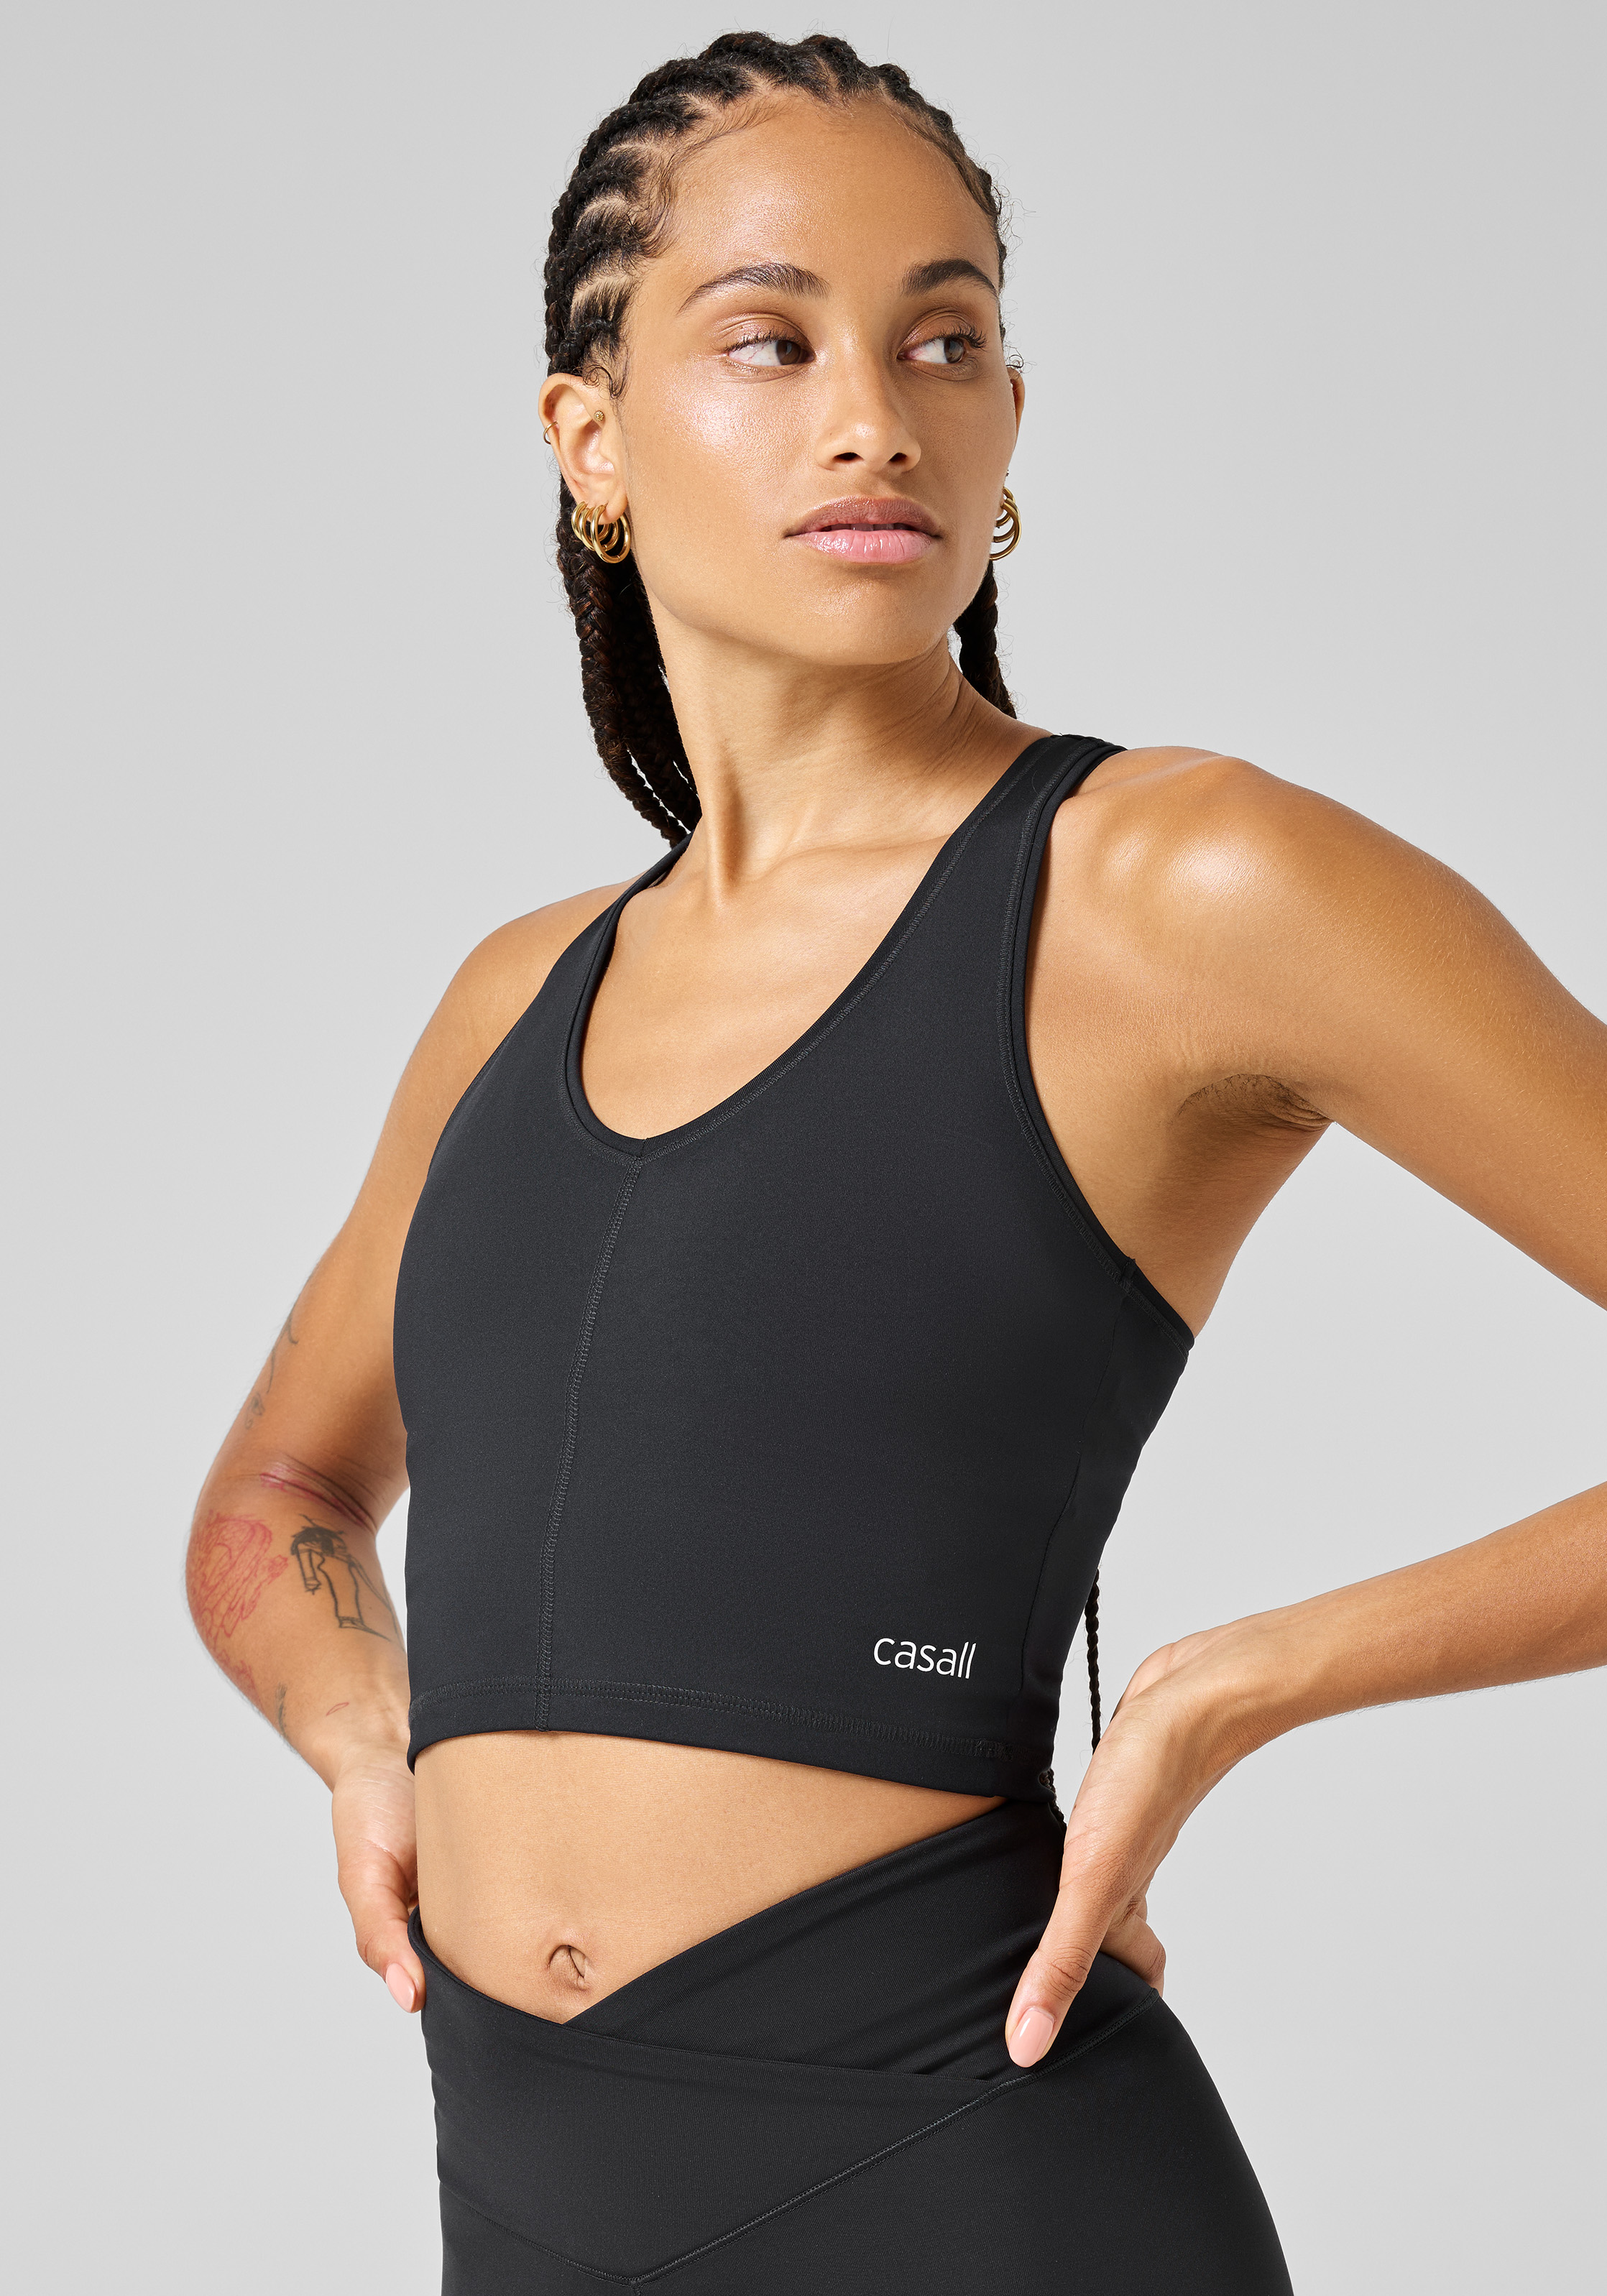 Casall - A seamless workout top in a sleek, V-neck design.